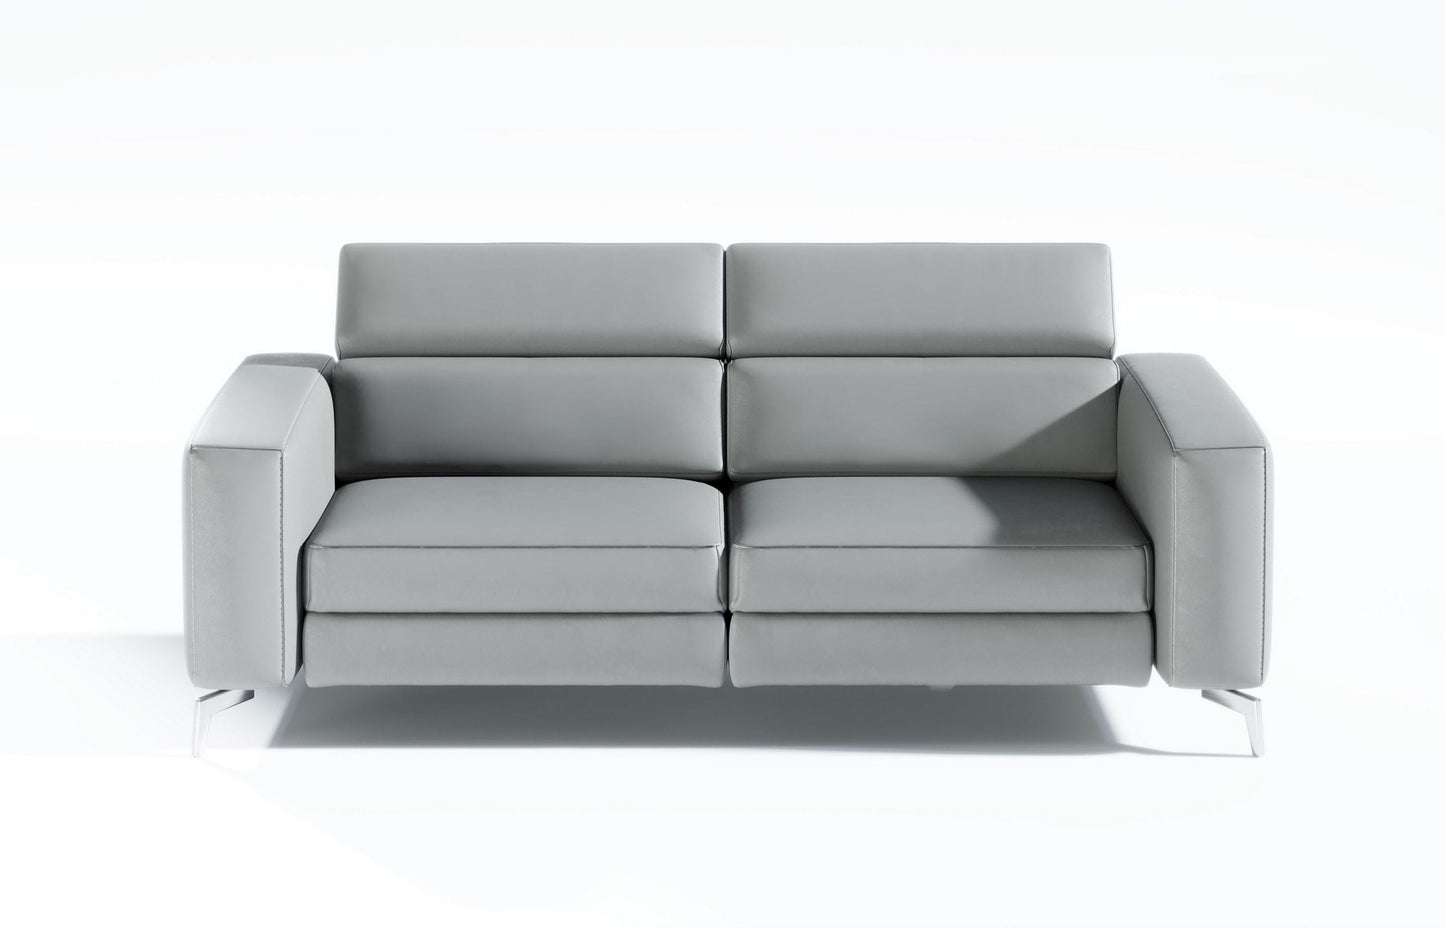 Coronelli Collezioni Turin - Grey Leather 2-Seater 91" Recliner Sofa